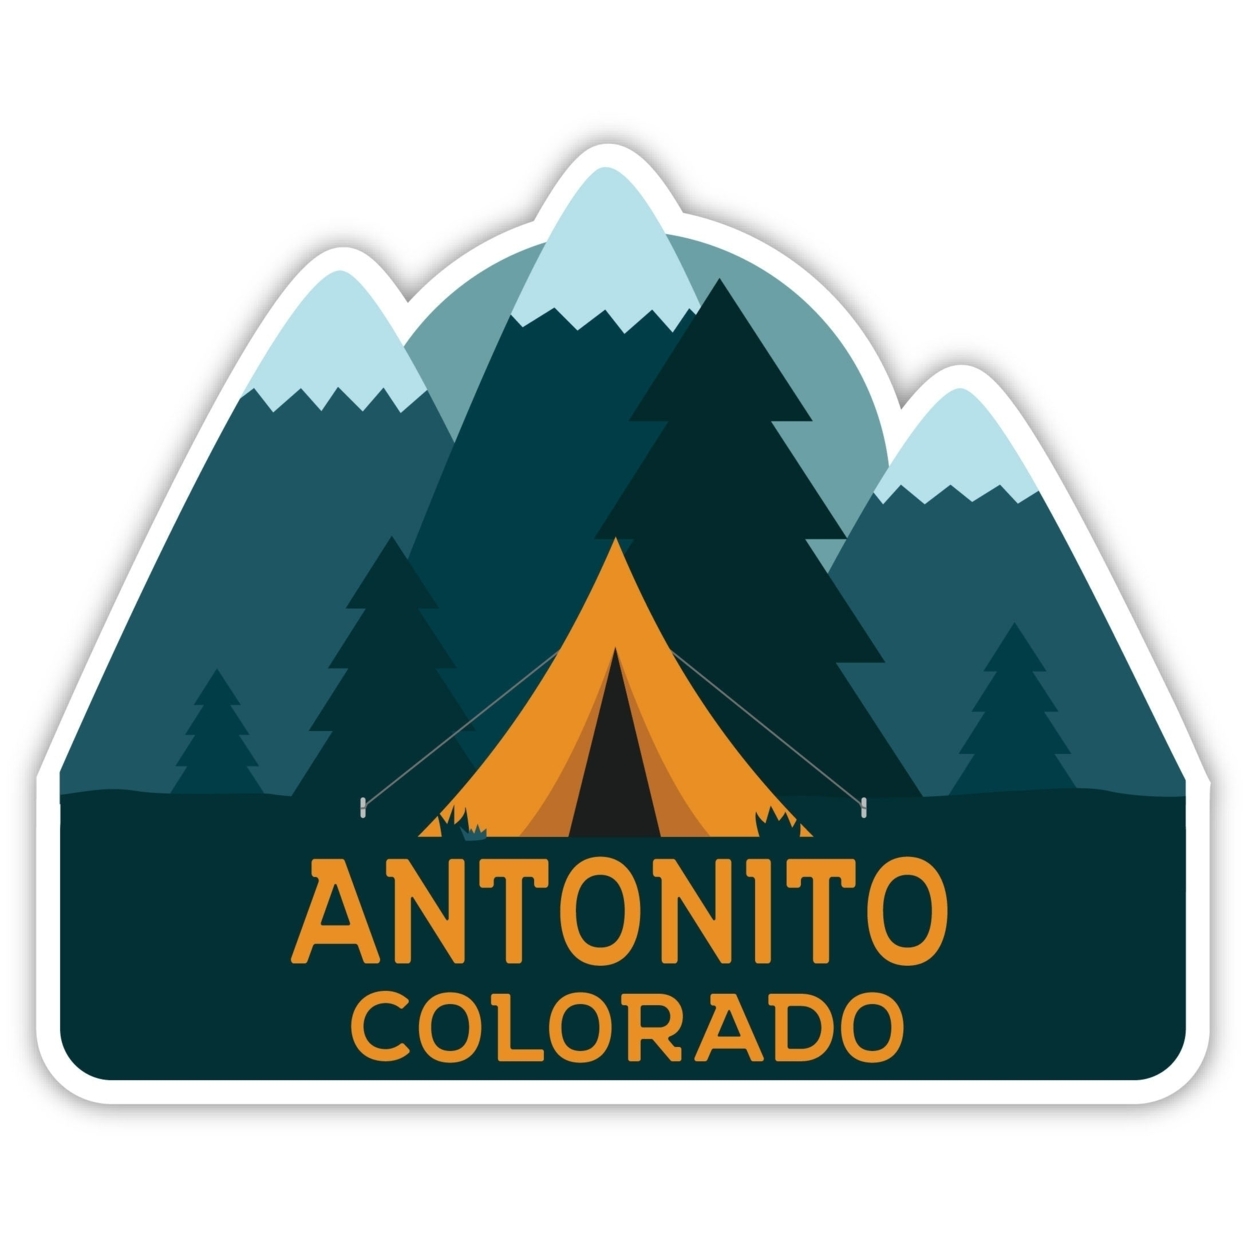 Antonito Colorado Souvenir Decorative Stickers (Choose Theme And Size) - Single Unit, 2-Inch, Tent